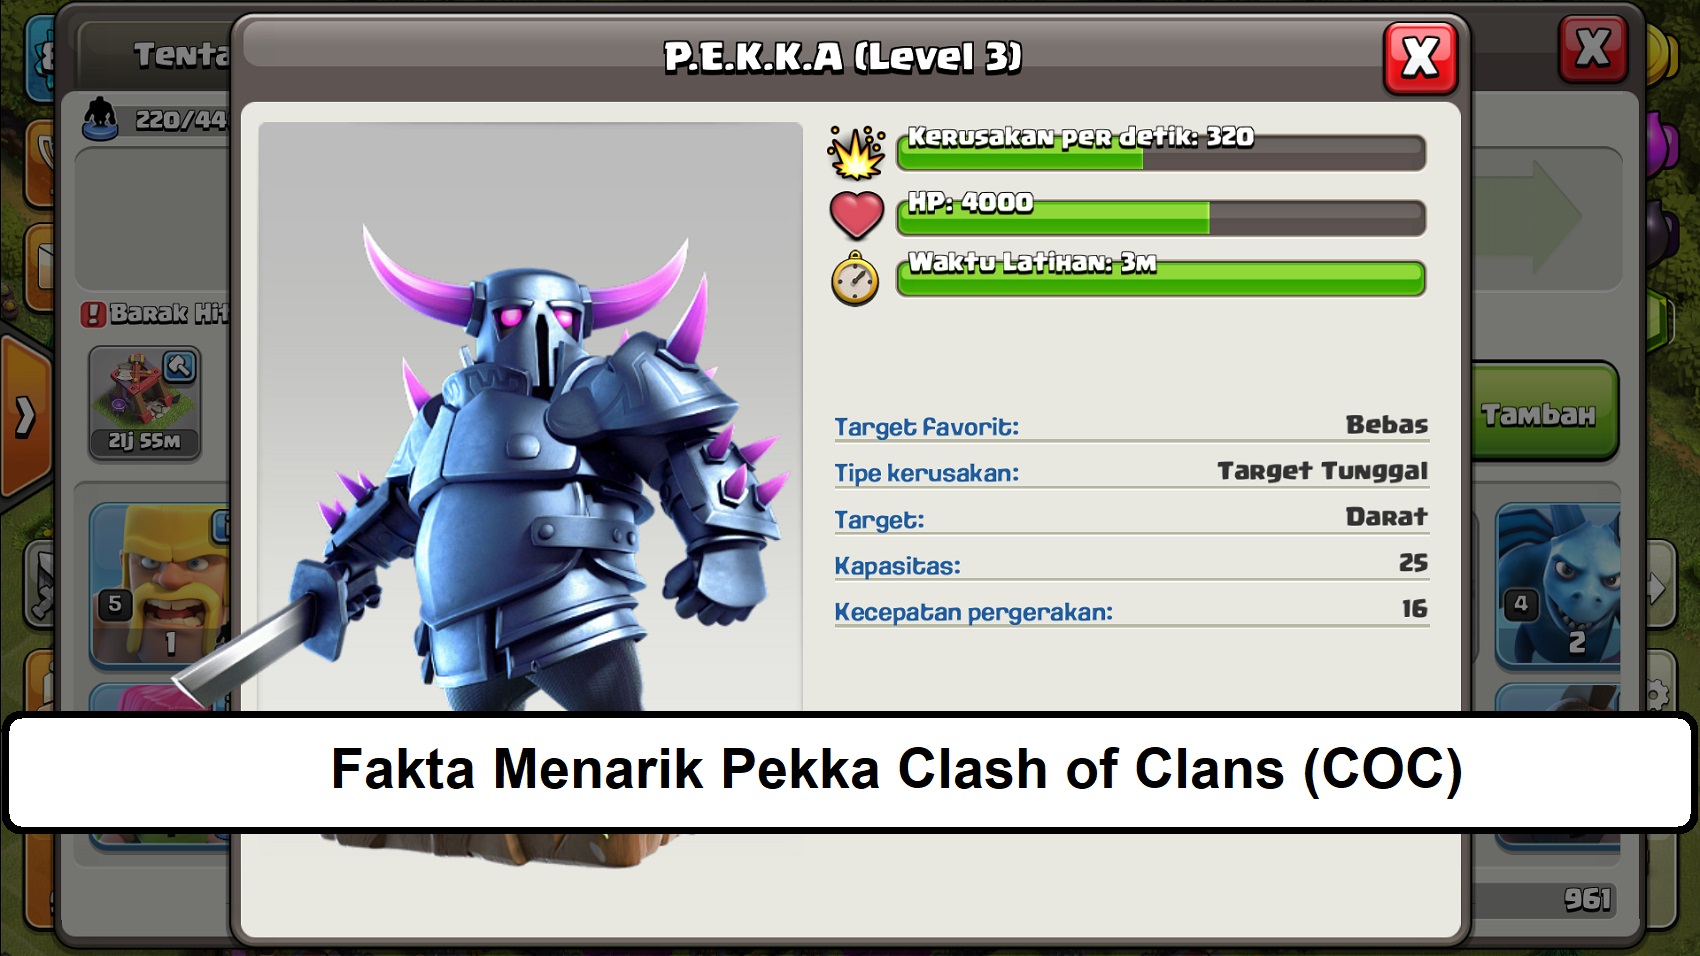 Fakta Menarik Pekka Clash of Clans (COC)